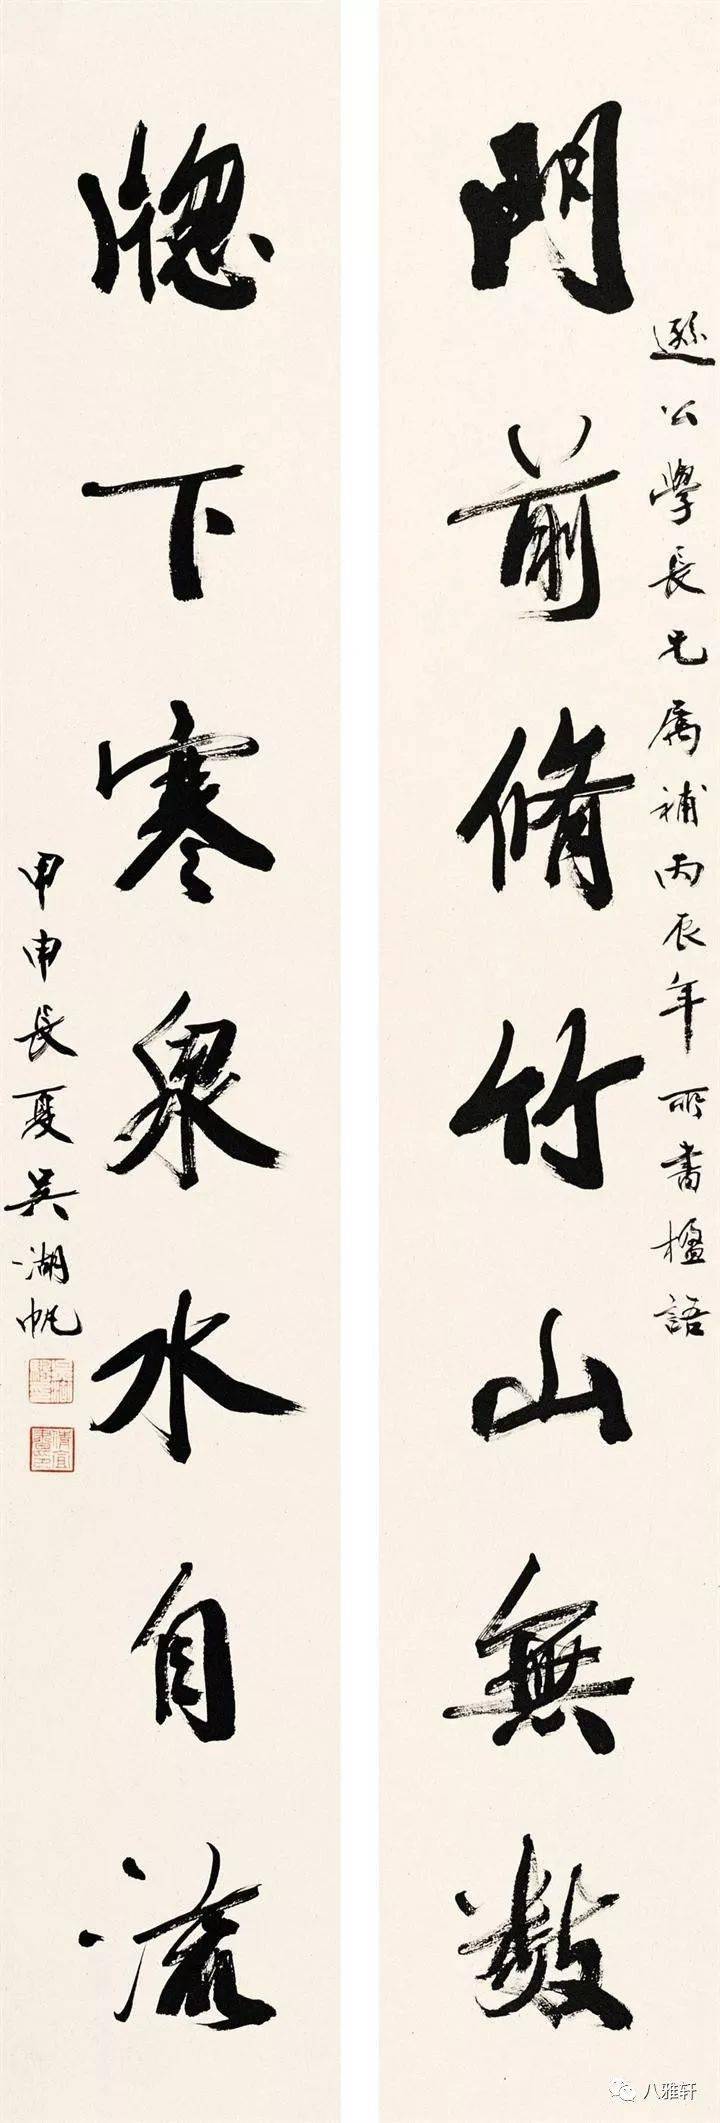 八雅轩丨八雅墨缘大师吴湖帆的书法对联95幅太精彩了